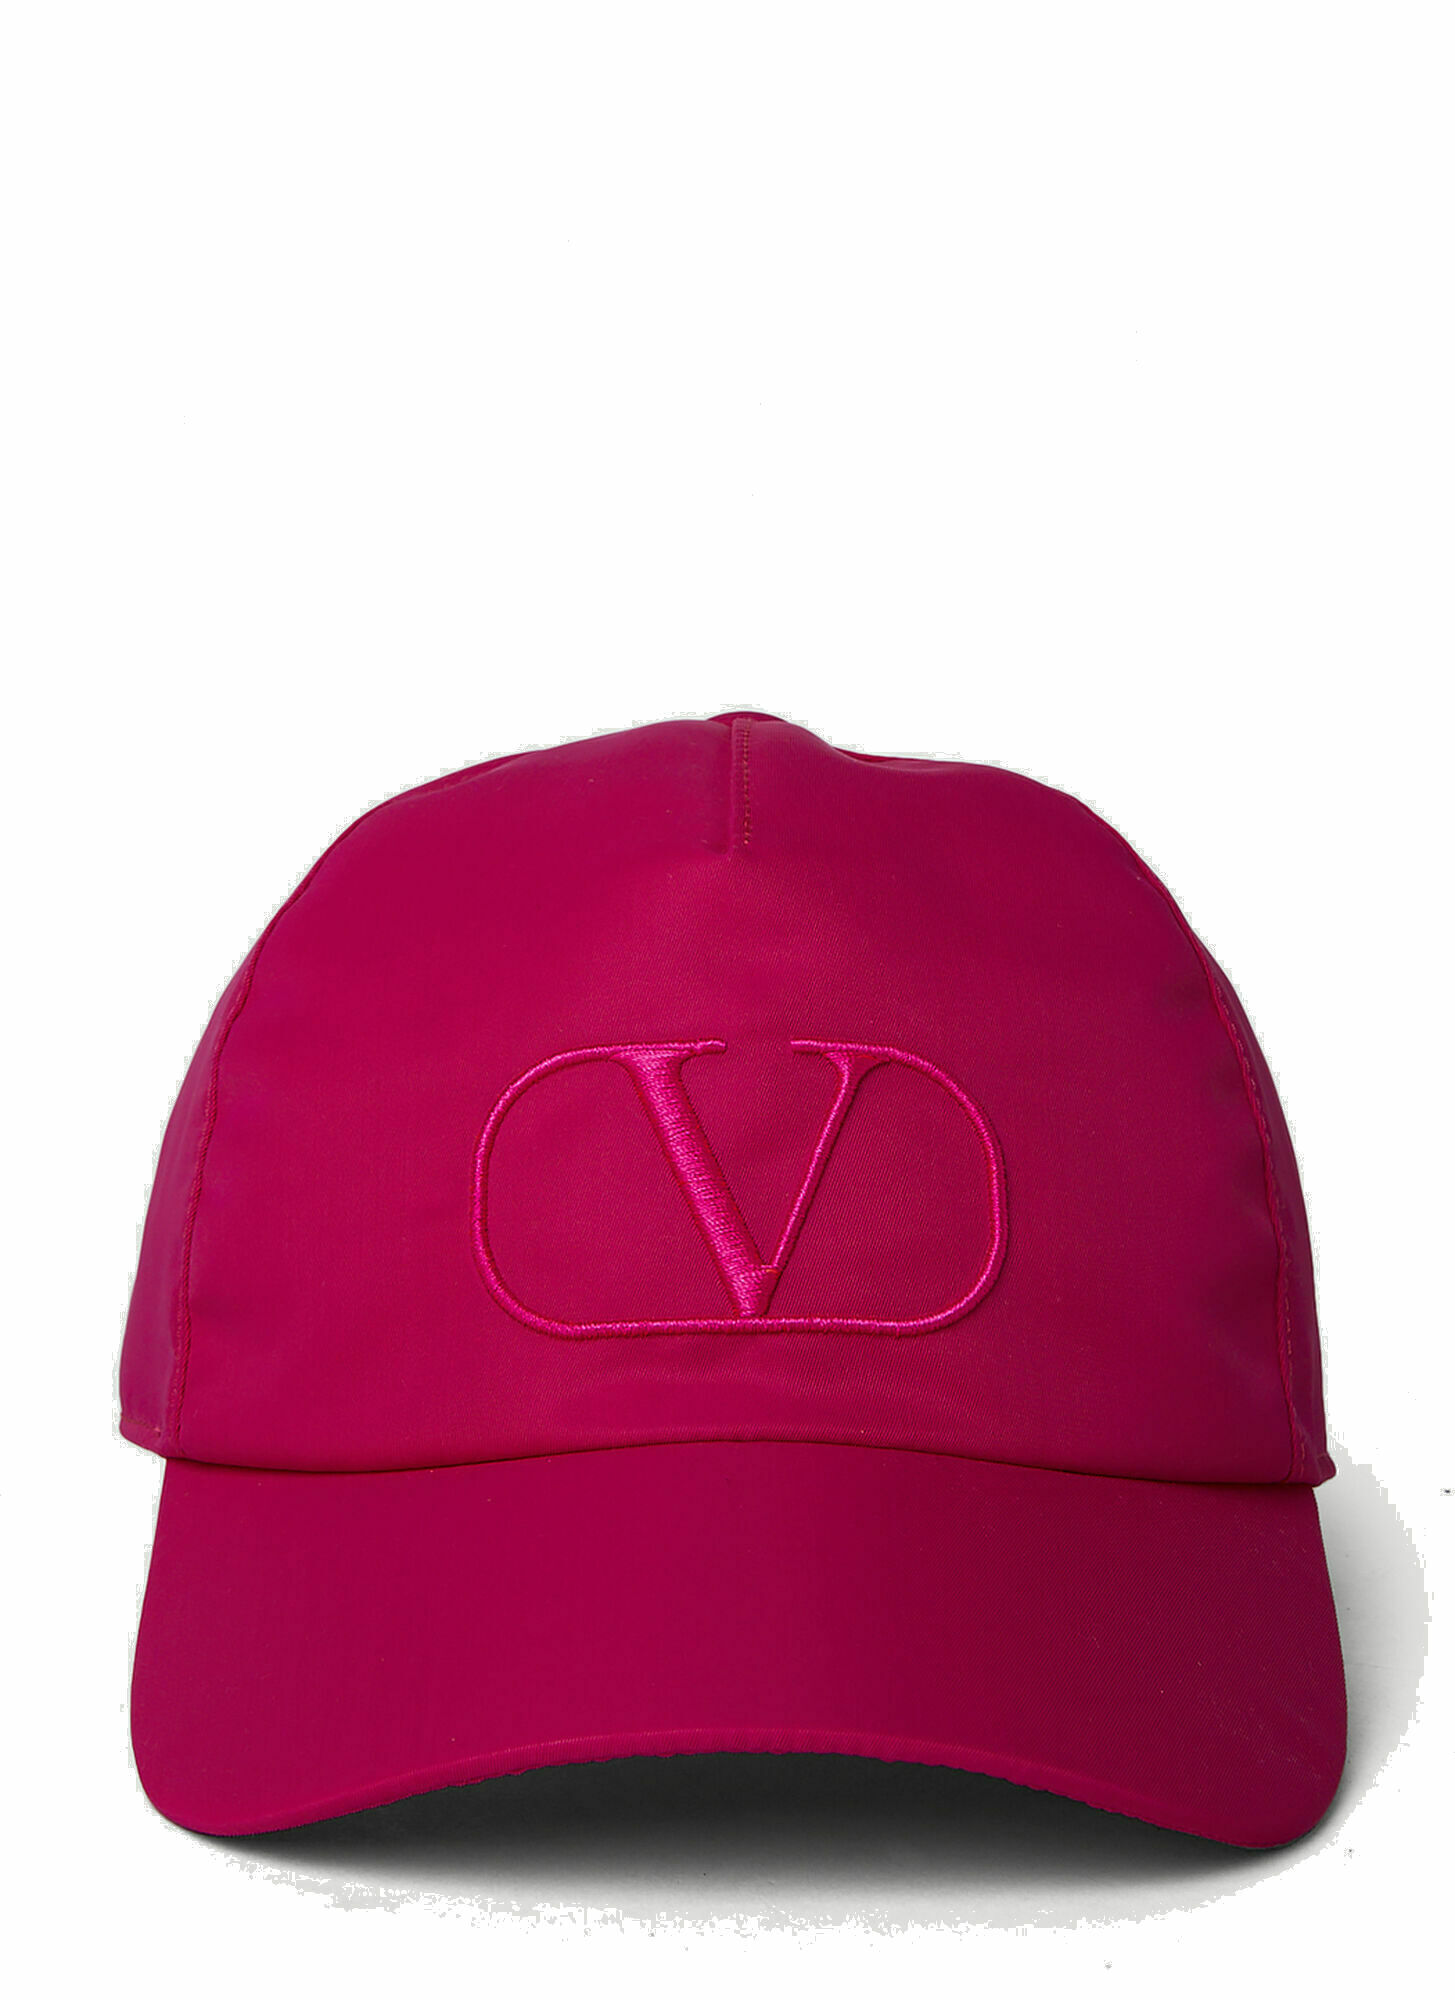 Photo: VLogo Baseball Cap in Pink